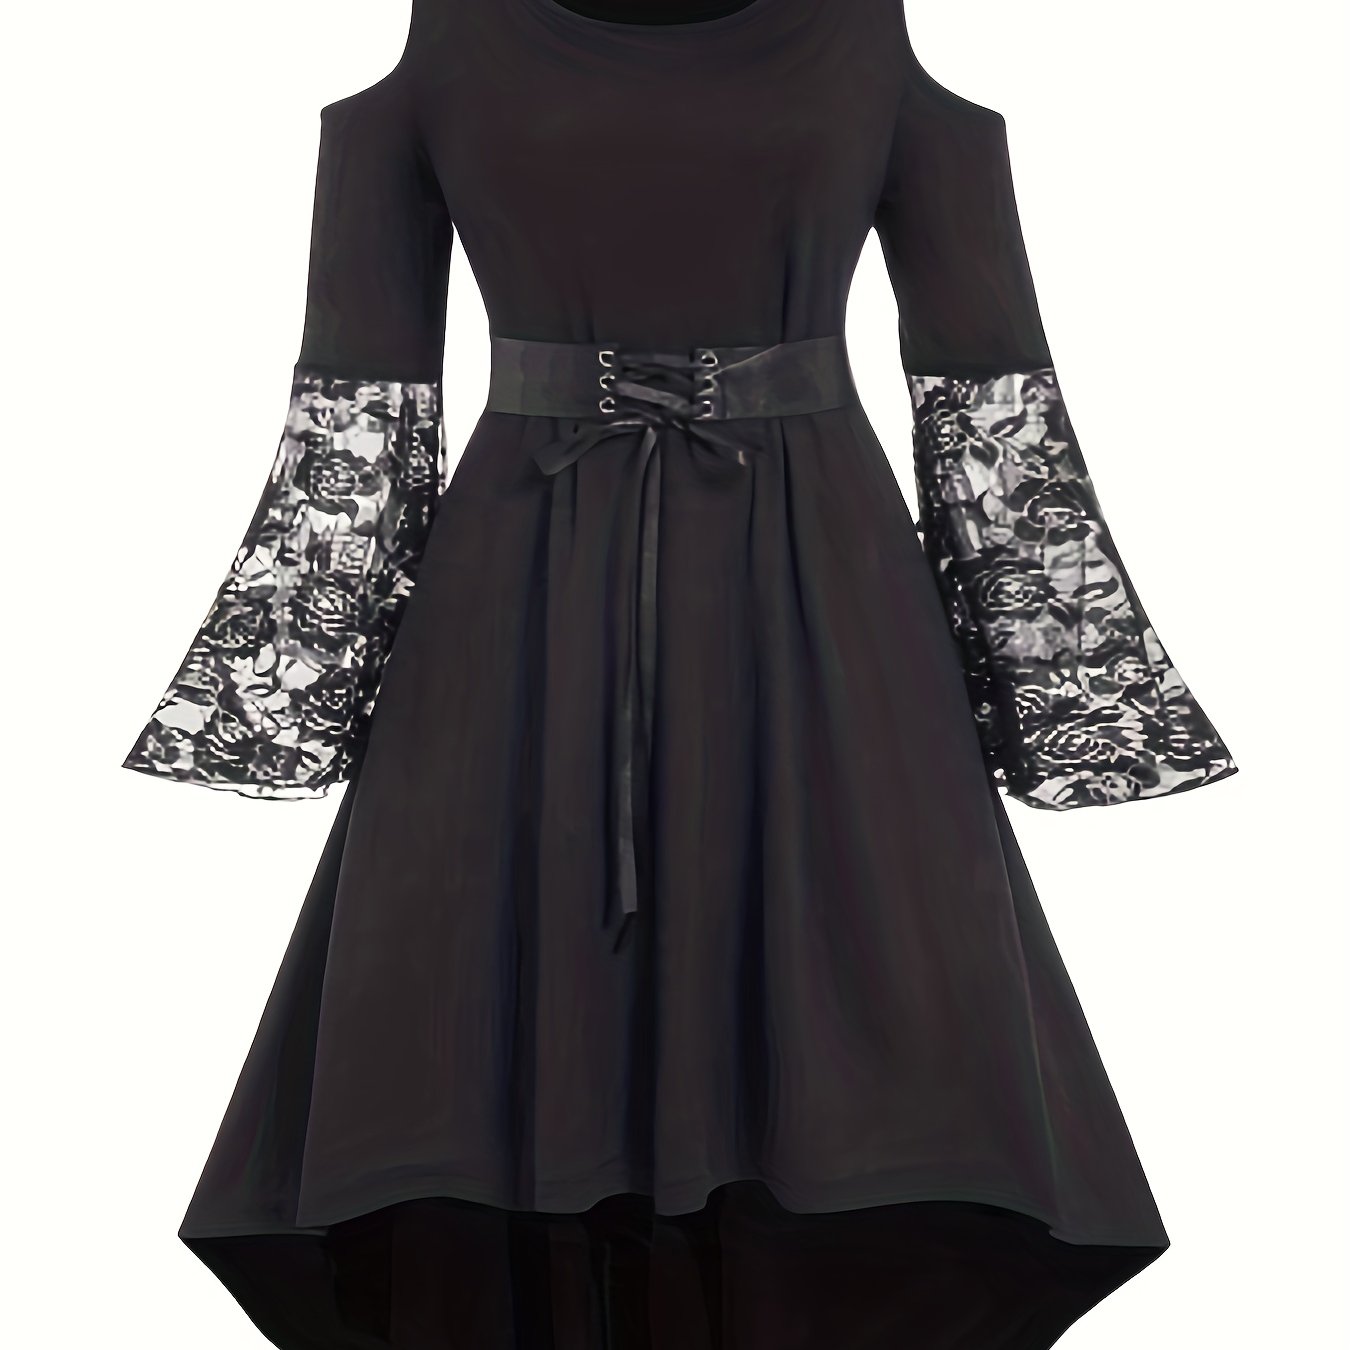 Plus Size Gothic Dress, Women's Plus Floral Lace Cold Shoulder Bell Sleeve  Lace Up Party Retro Dress